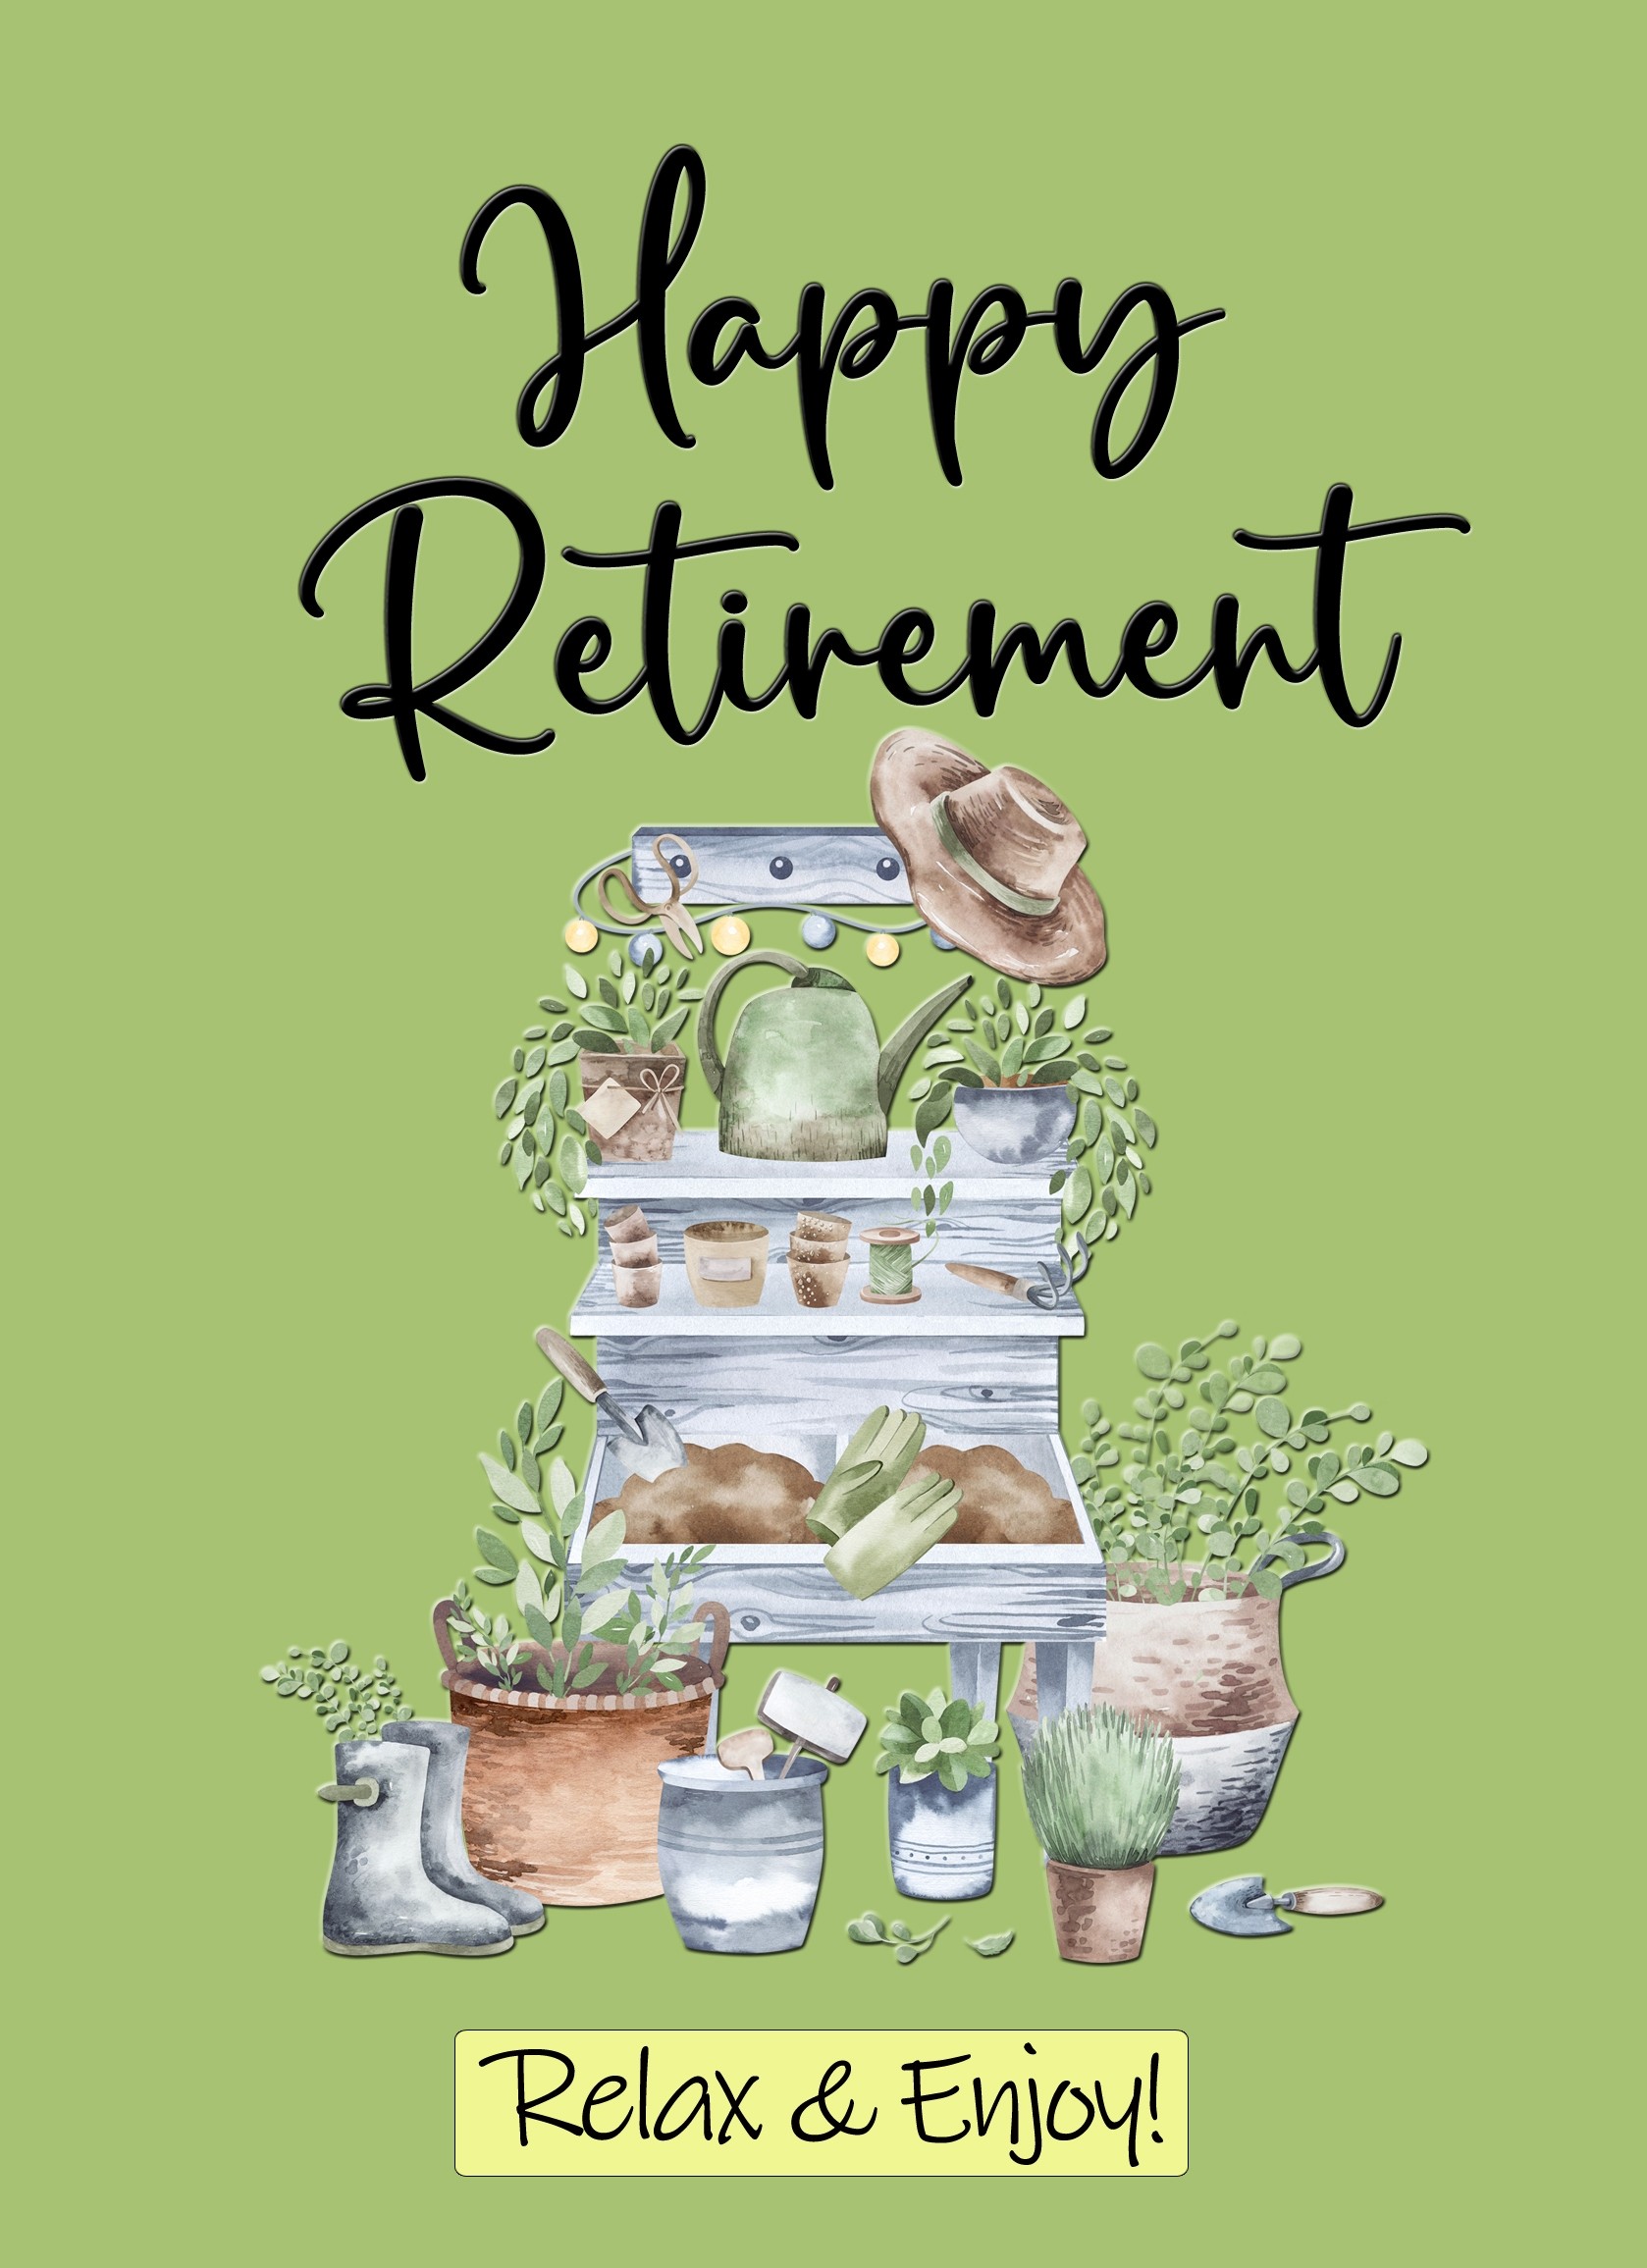 Happy Retirement Congratulations Card (Green)